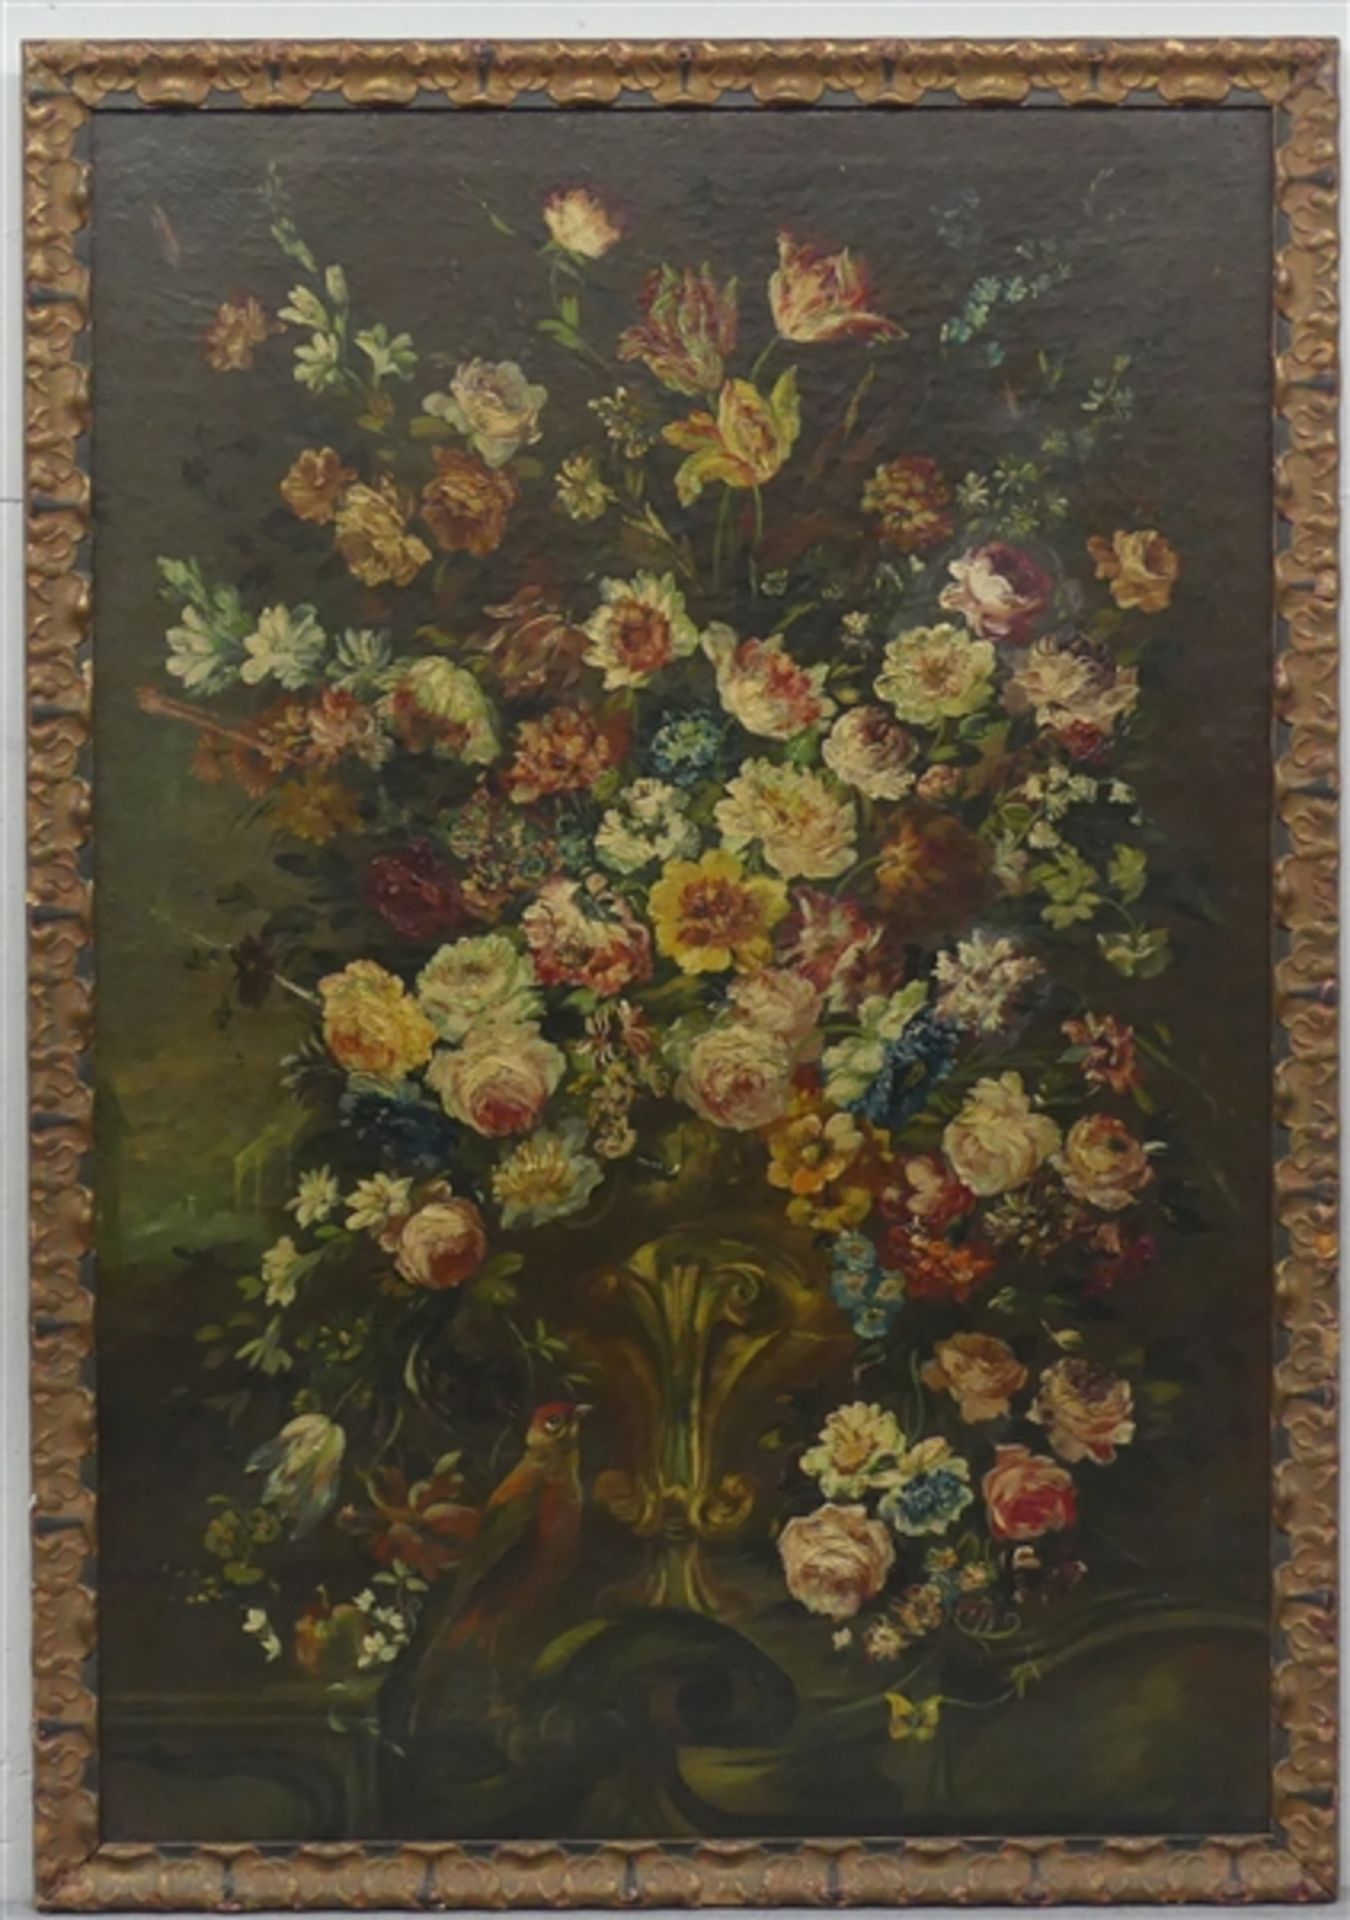 Stillebenmaler, um 1820 Öl auf Leinen, prachtvolles Blumenstilleben mit einem kleinen Papagei,